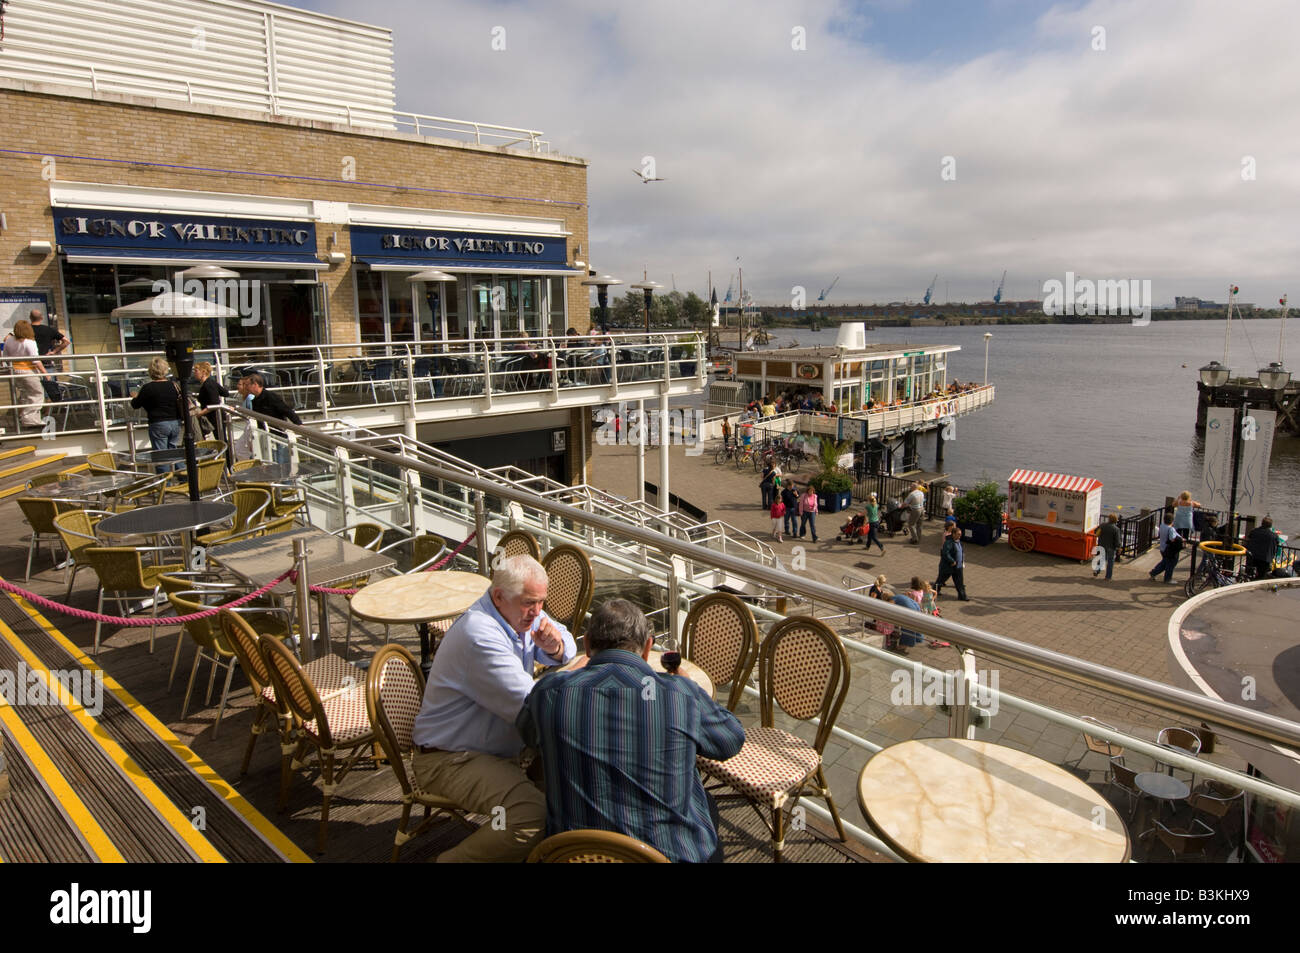 Persone cafe bar ristoranti su Mermaid Quay per la Baia di Cardiff Wales UK, pomeriggio estivo Foto Stock